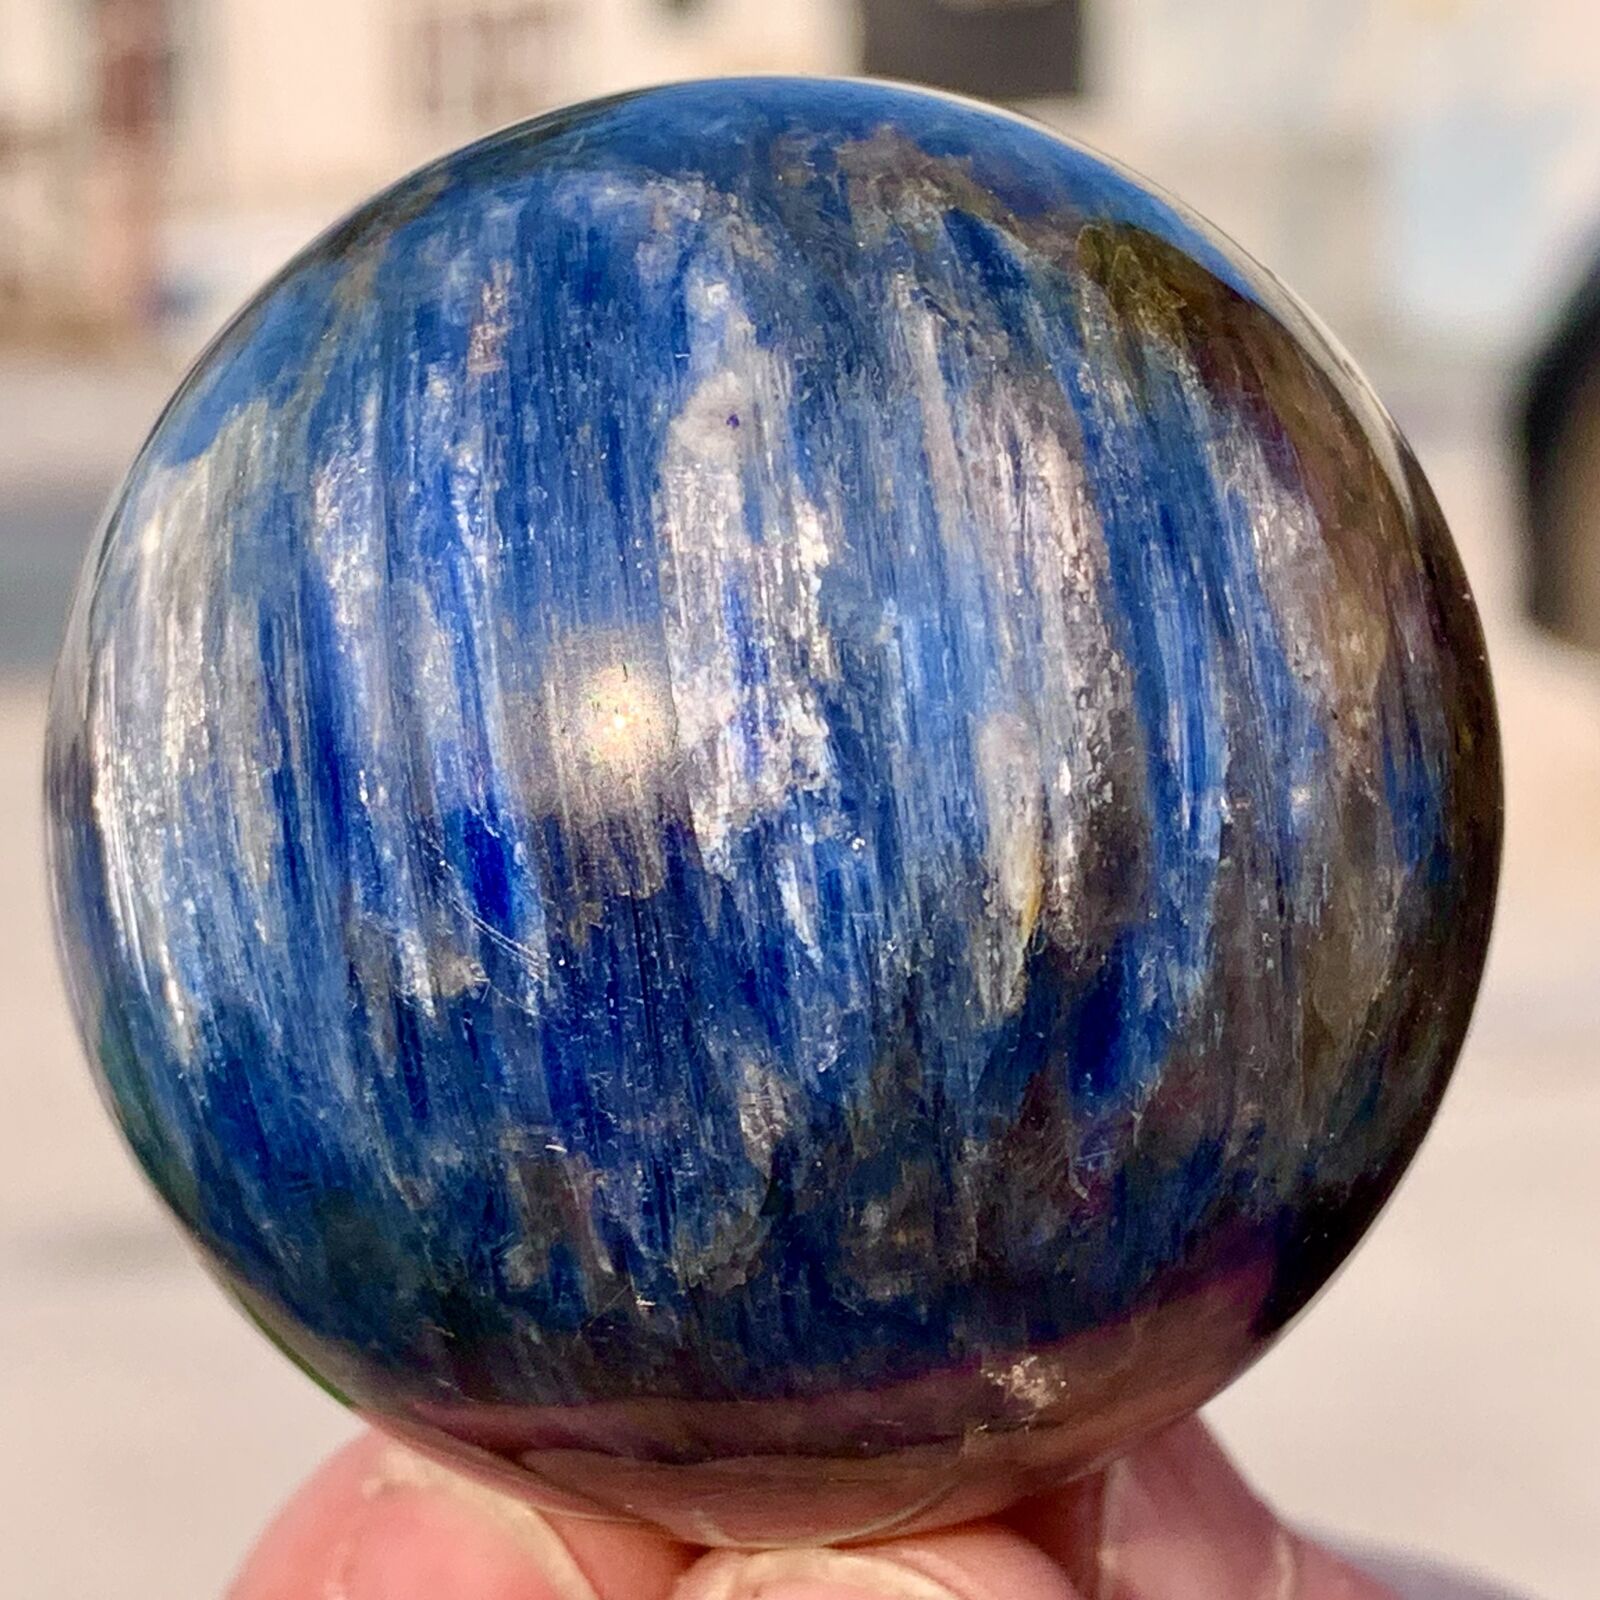 209G RareNatural beautiful Blue Kyanite Sphere Ball Quartz Crystal Healing